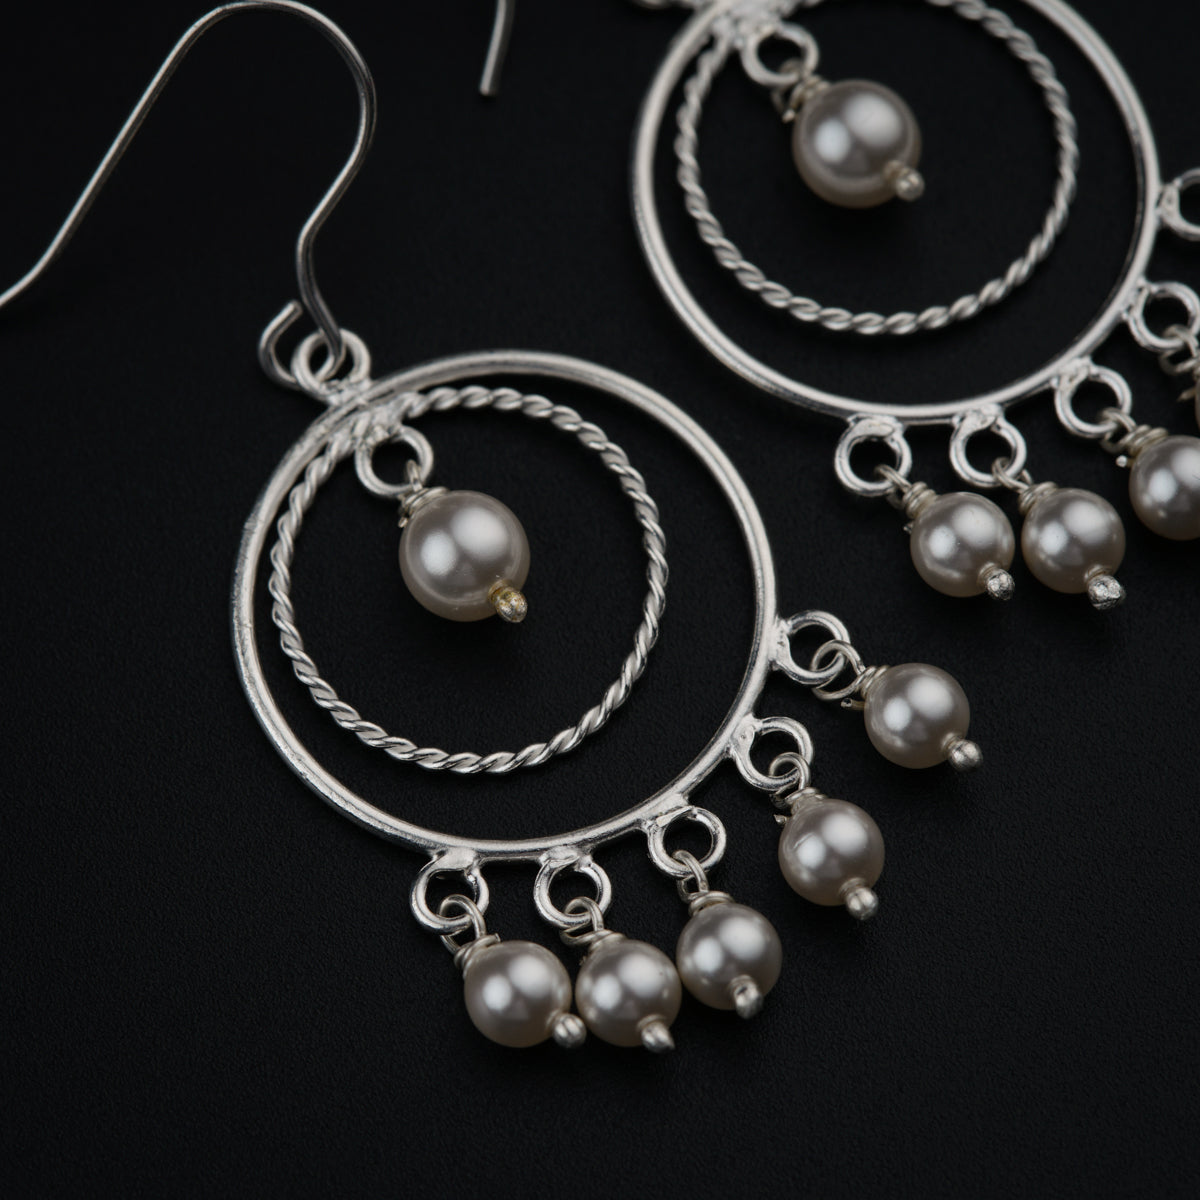 a pair of silver hoop earrings with pearls